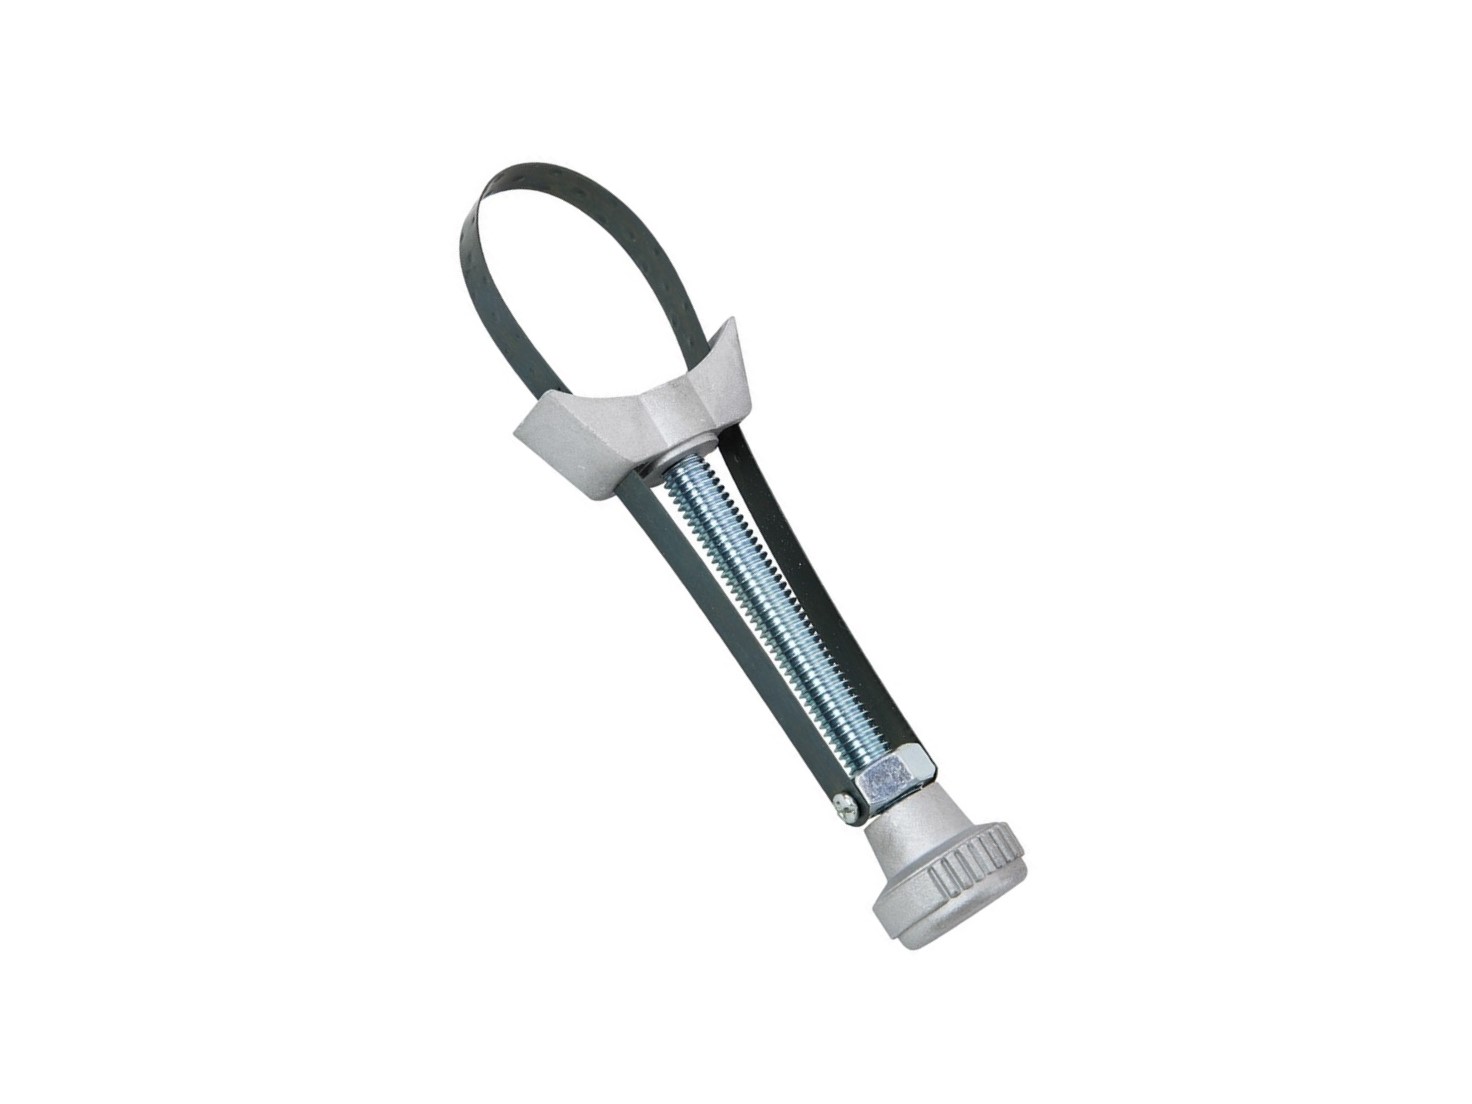 Ölfilterschlüssel mit Metallband - Profi Werkzeug Bimeju GmbH